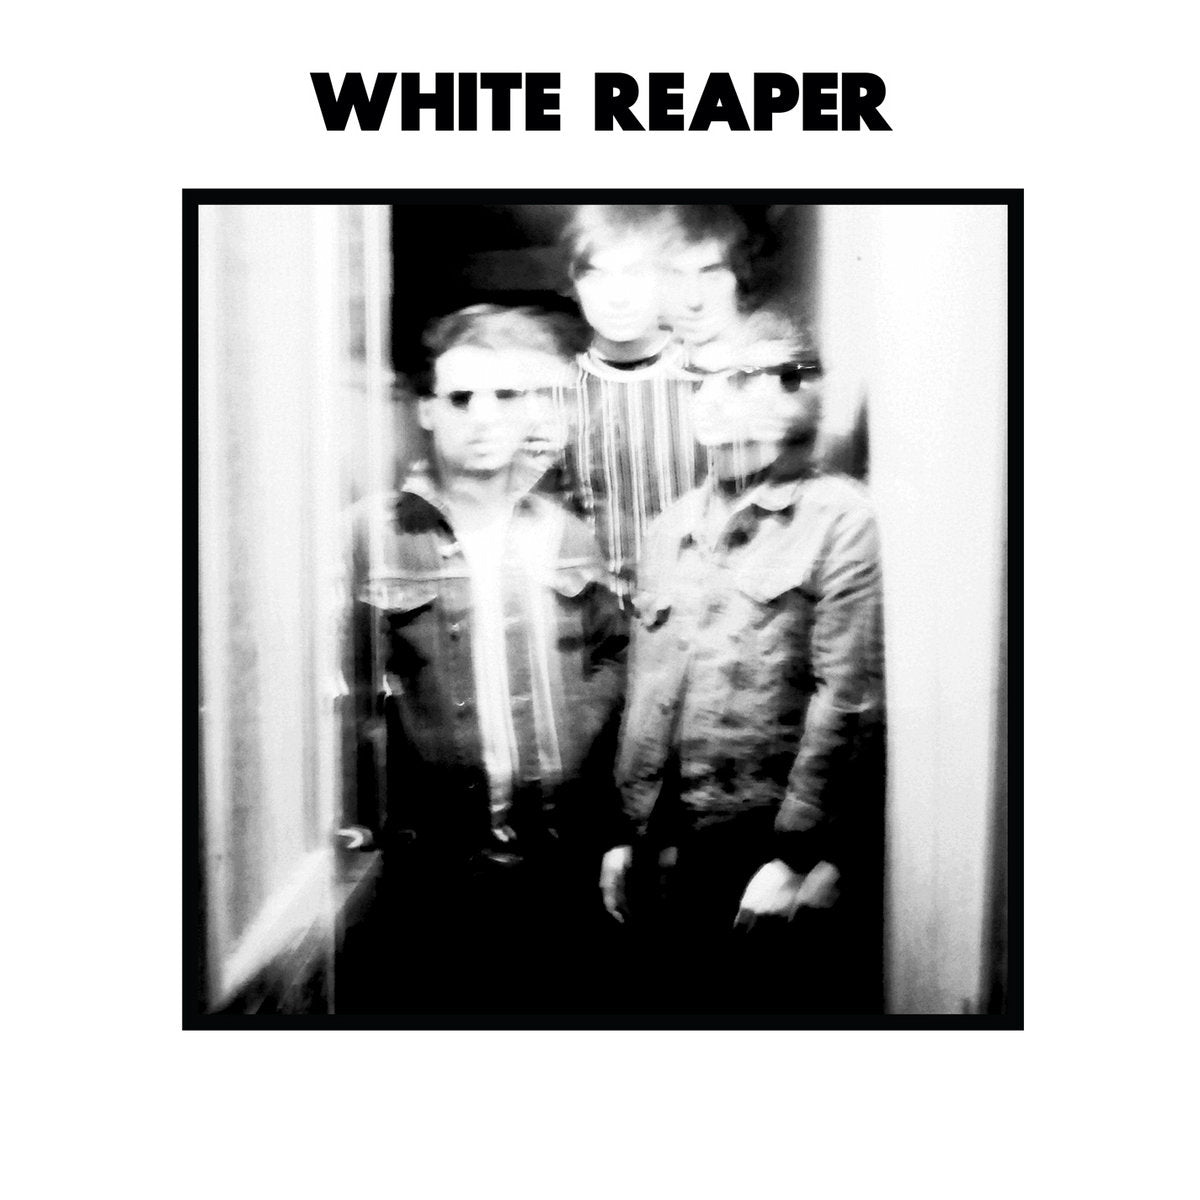 White Reaper "White Reaper" 12" Vinyl